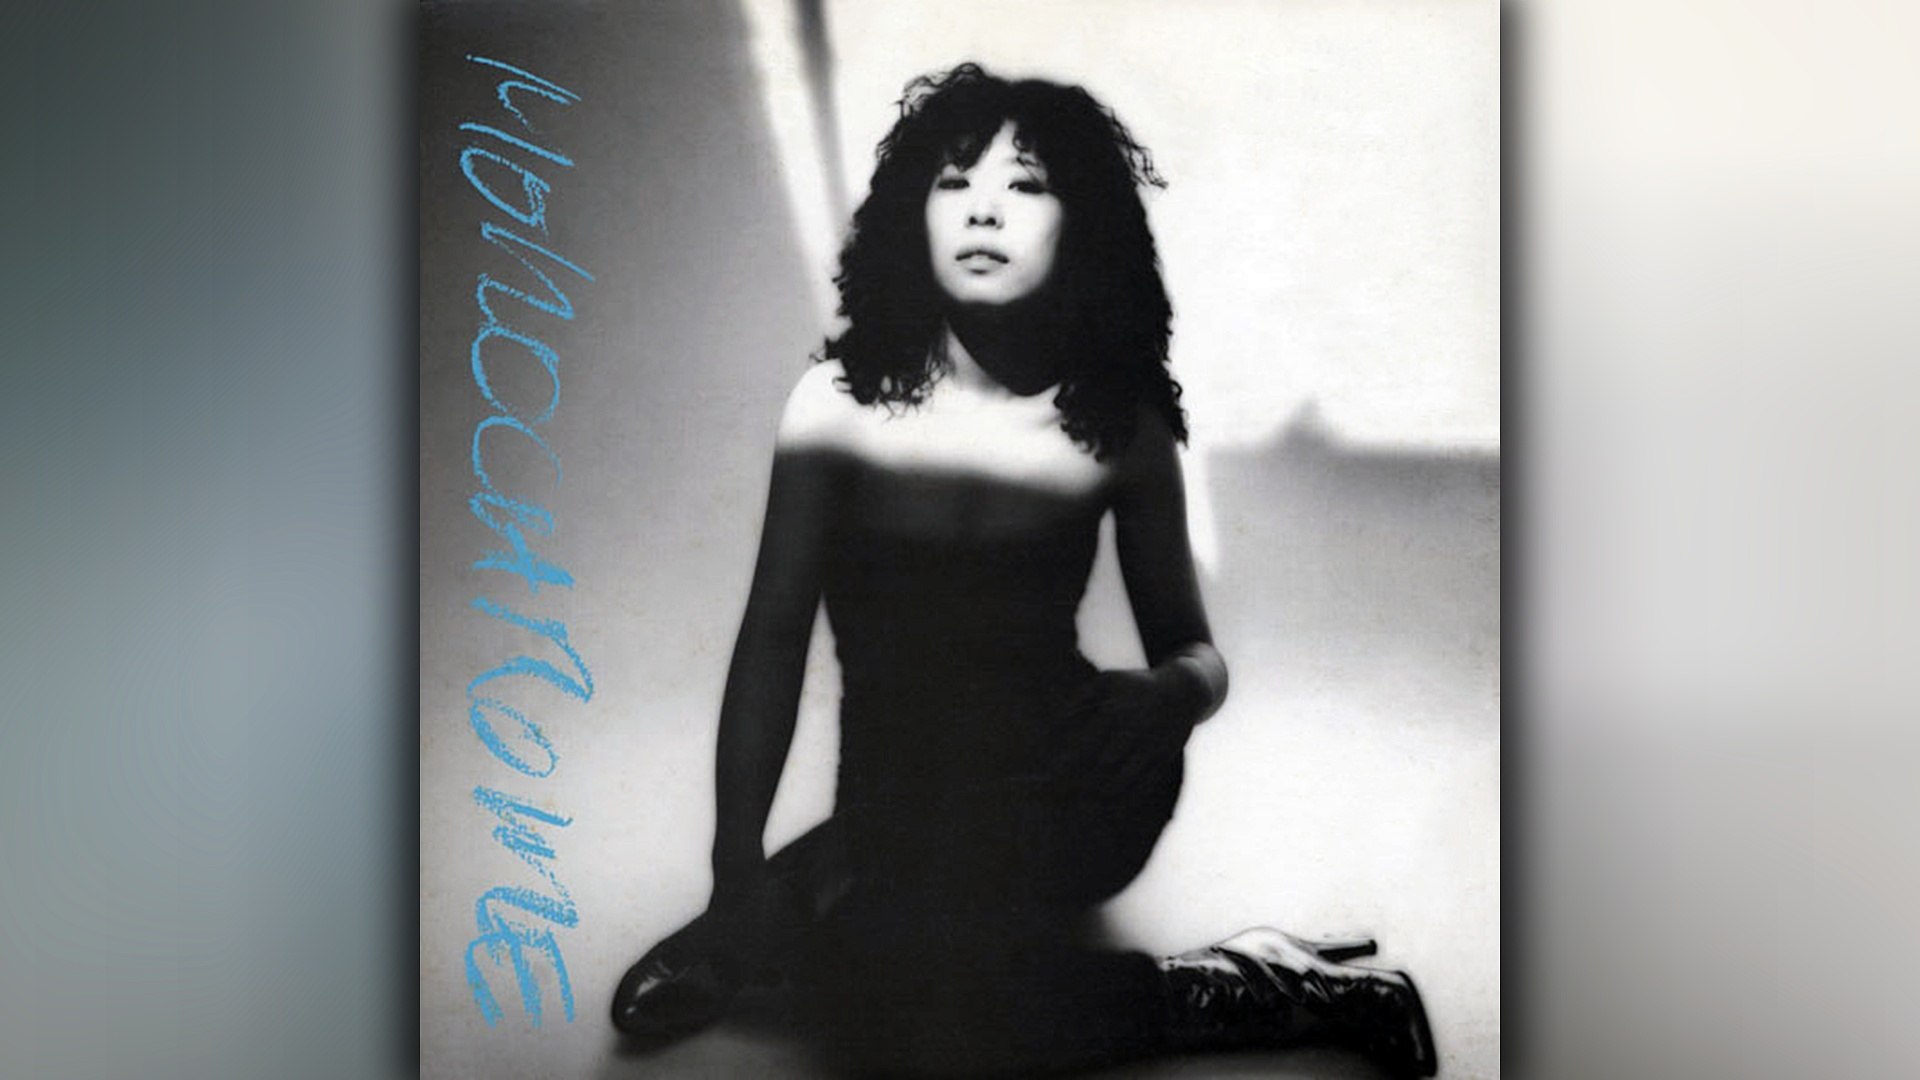 吉田美奈子 (Minako Yoshida) - 07 - 1980 - Monochrome [full album]